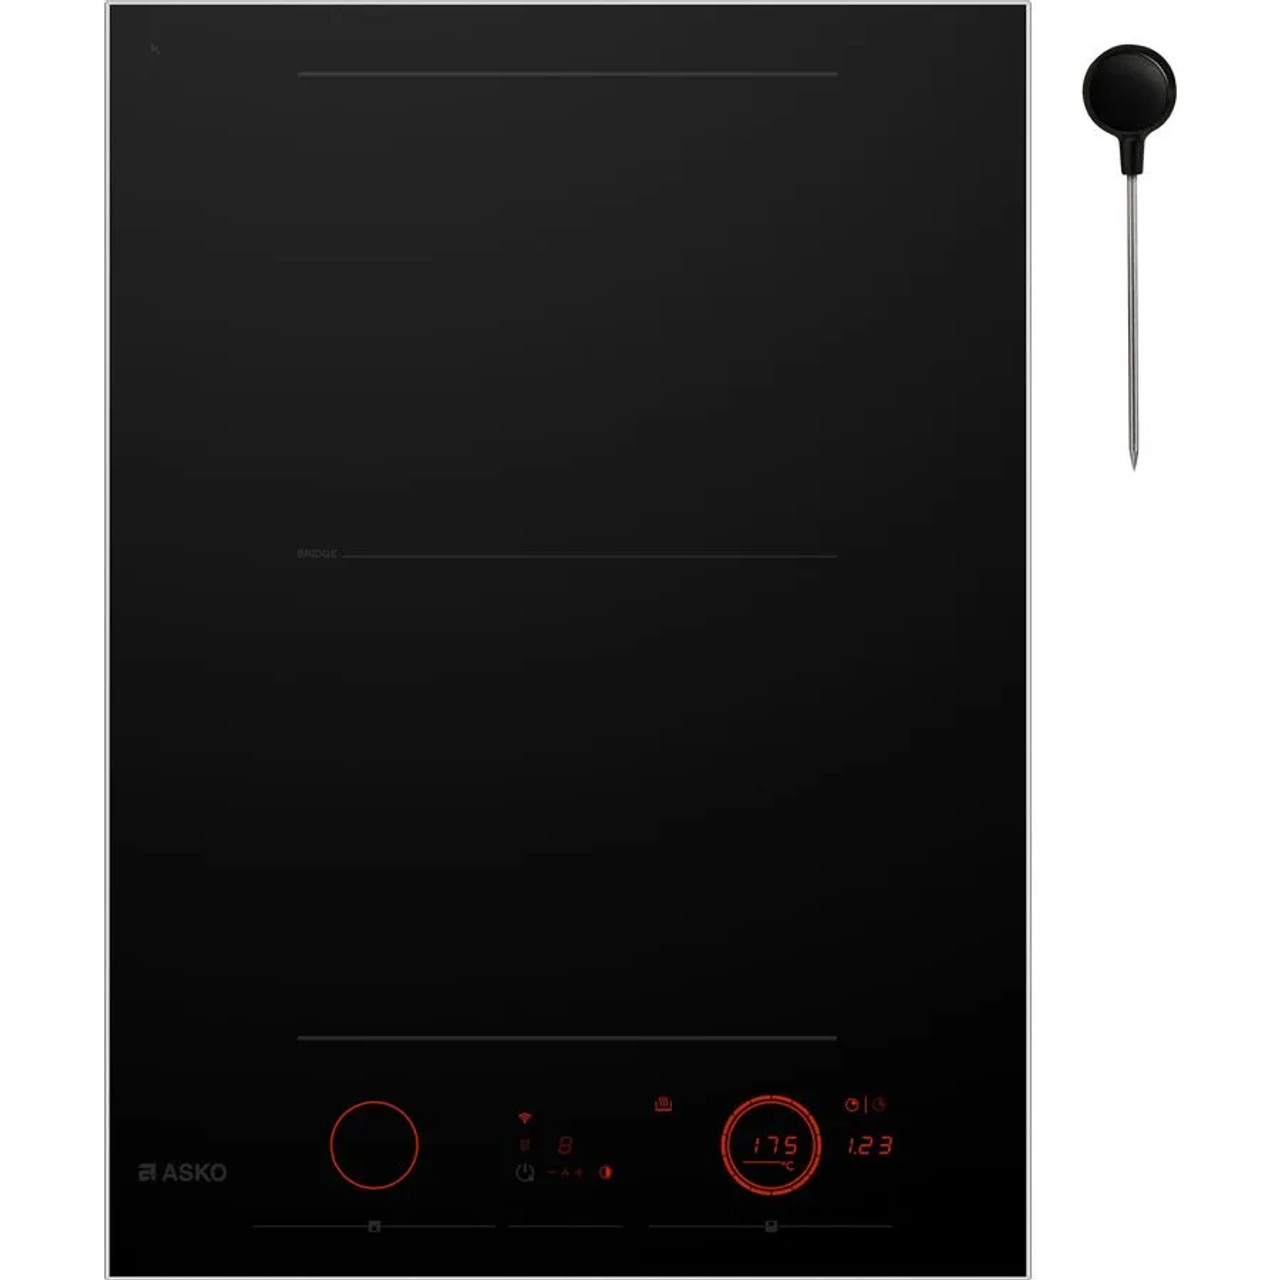 HID352GC - Celsius Cooking 38cm Induction Cooktop - Black